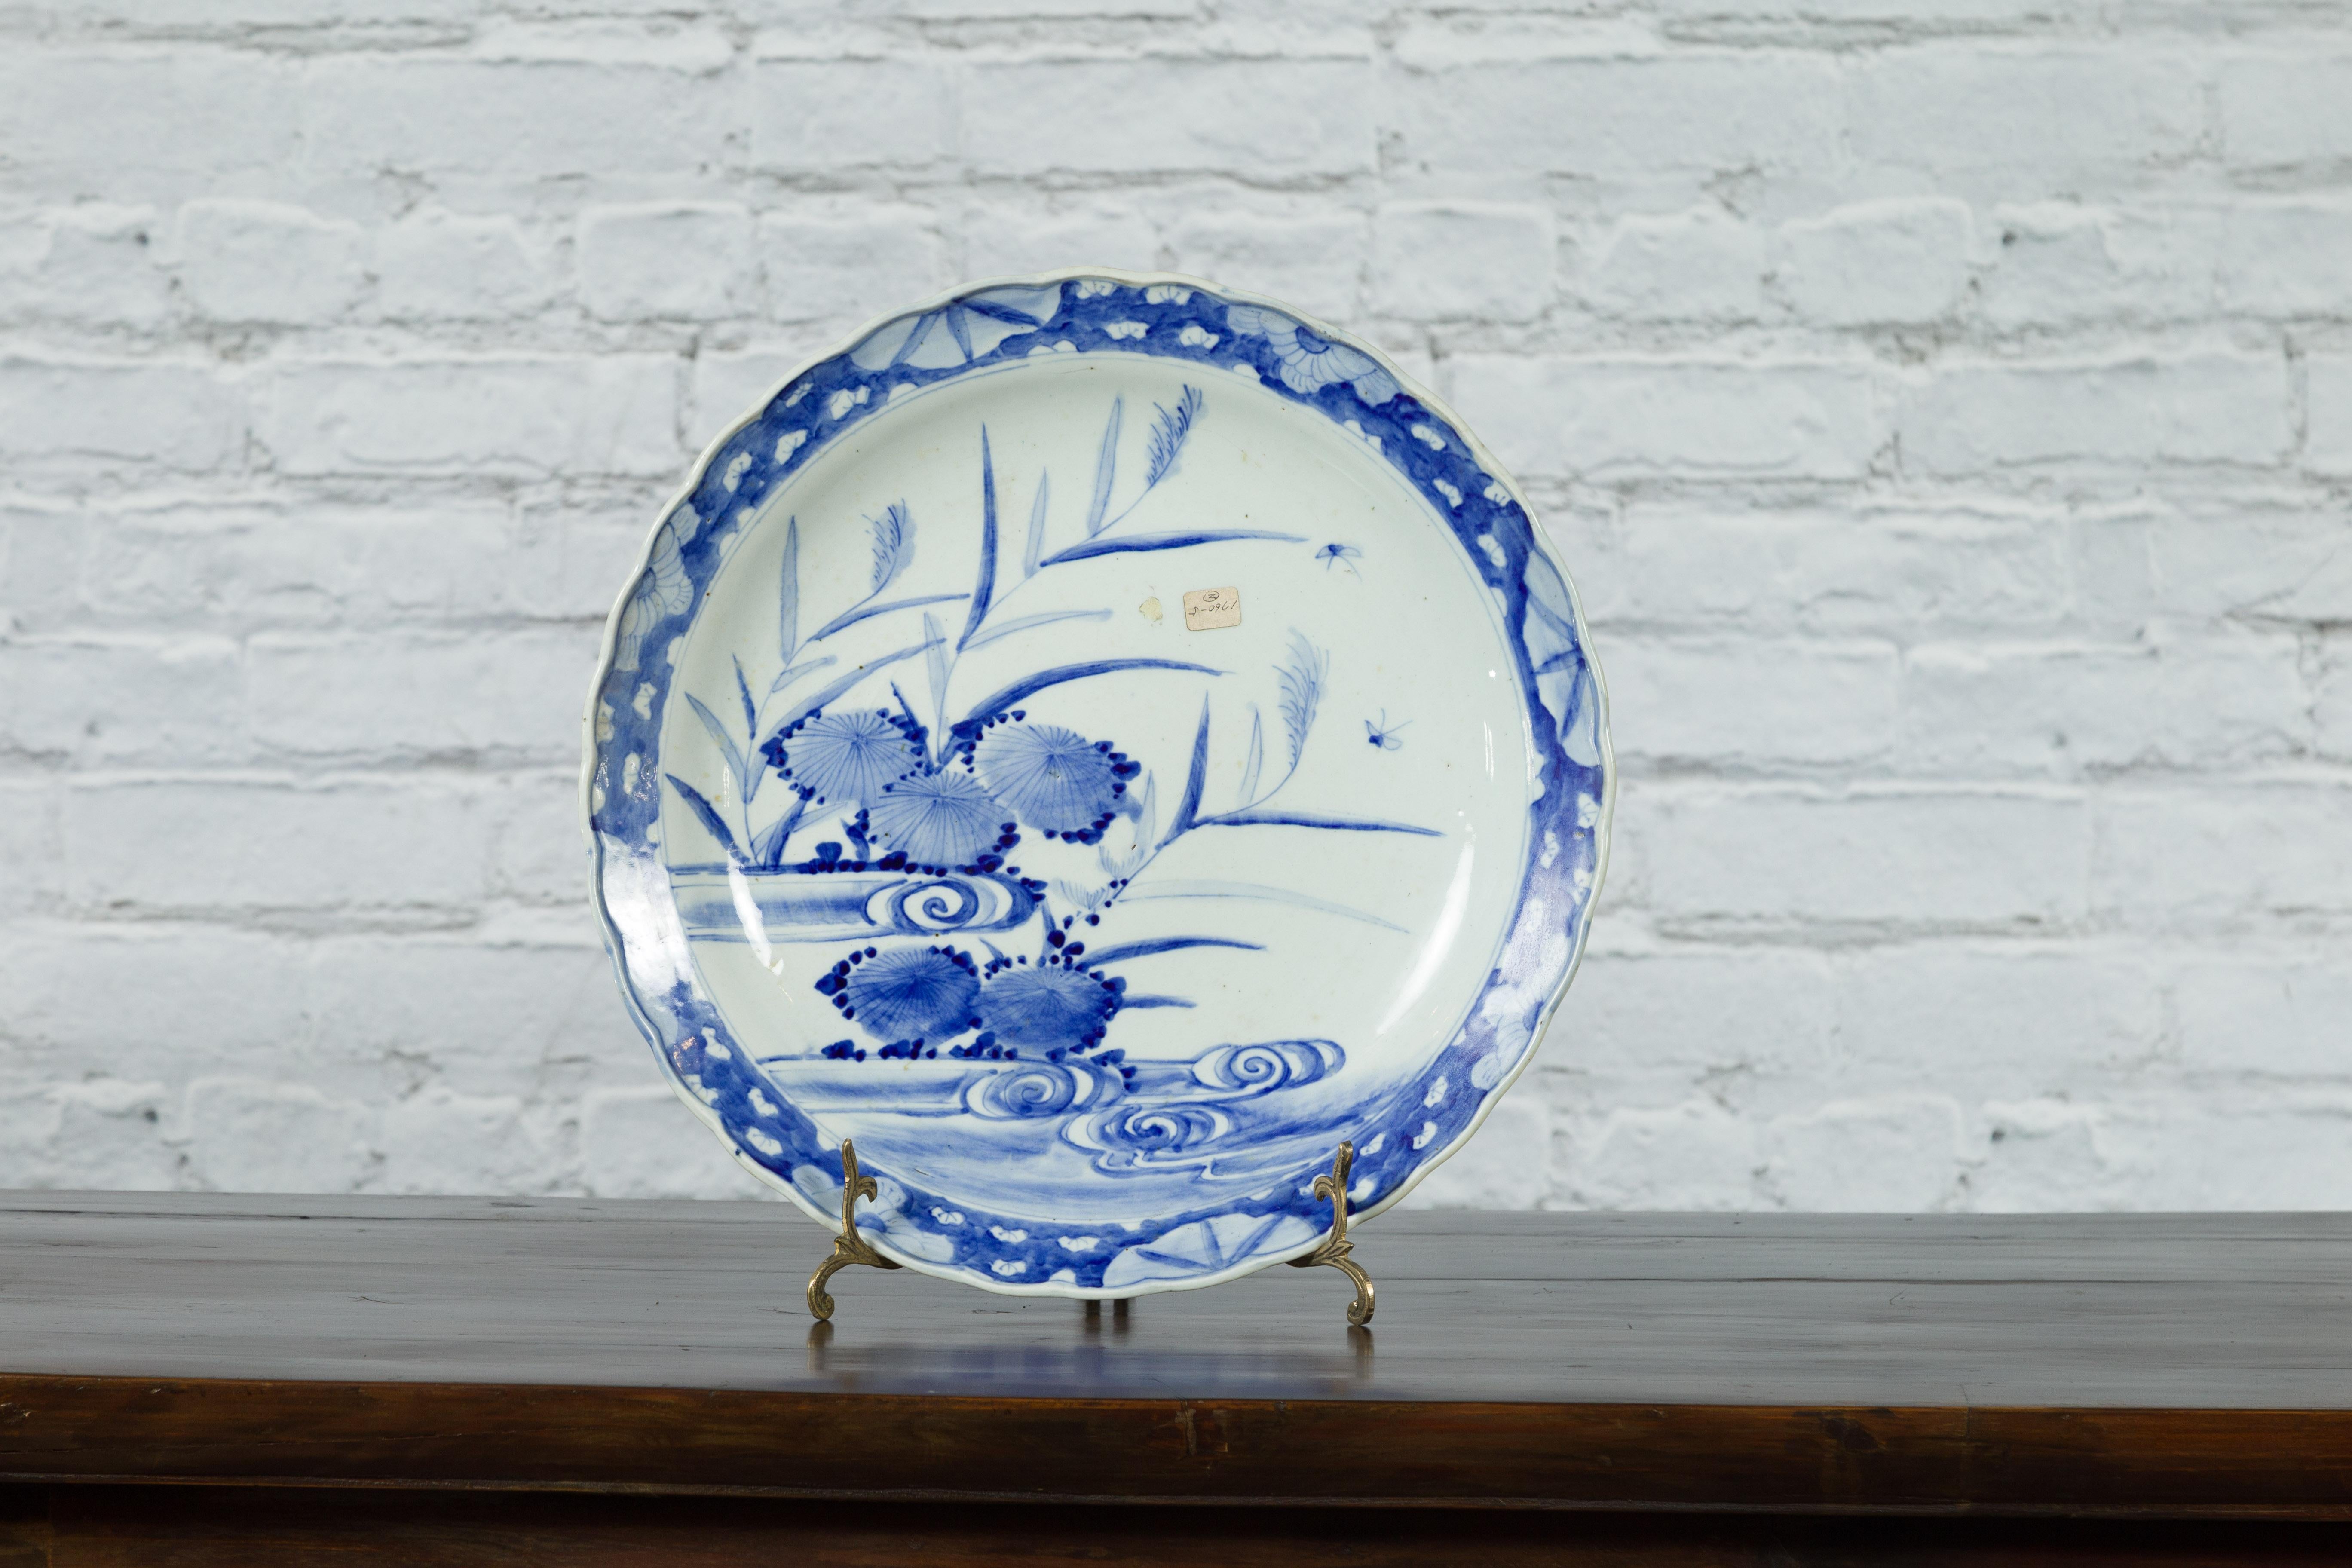 Japanischer Imari-Porzellanteller aus dem 19. Jahrhundert mit handgemaltem blau-weißem Dekor aus Blumen, Blättern und Schmetterlingen. Dieser Teller aus Imari-Porzellan, der im 19. Jahrhundert in Japan hergestellt wurde, zeigt ein zartes blau-weißes